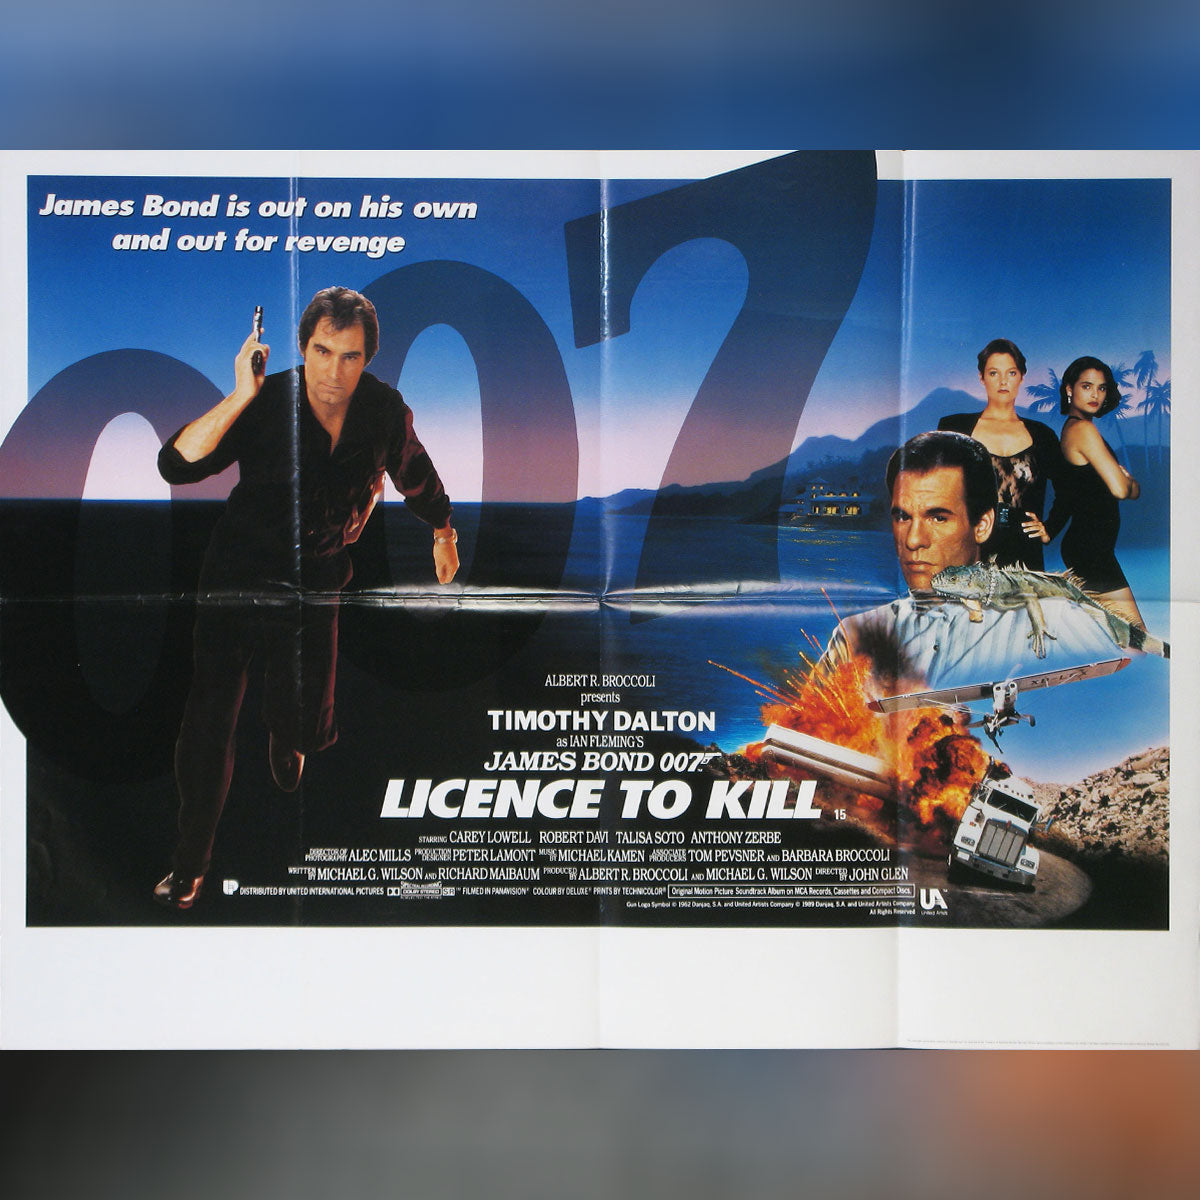 License To Kill (1989)